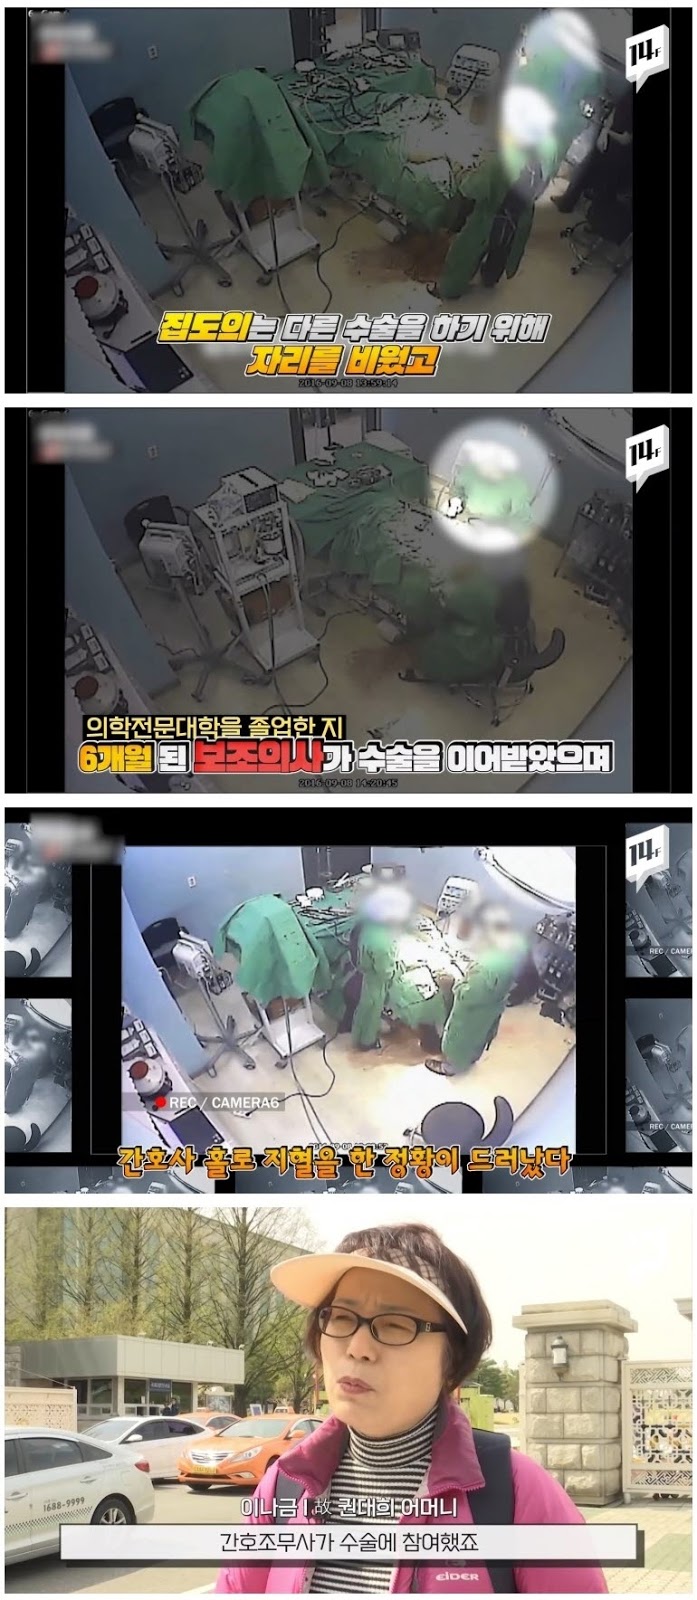 수술실 CCTV 의무화 논란